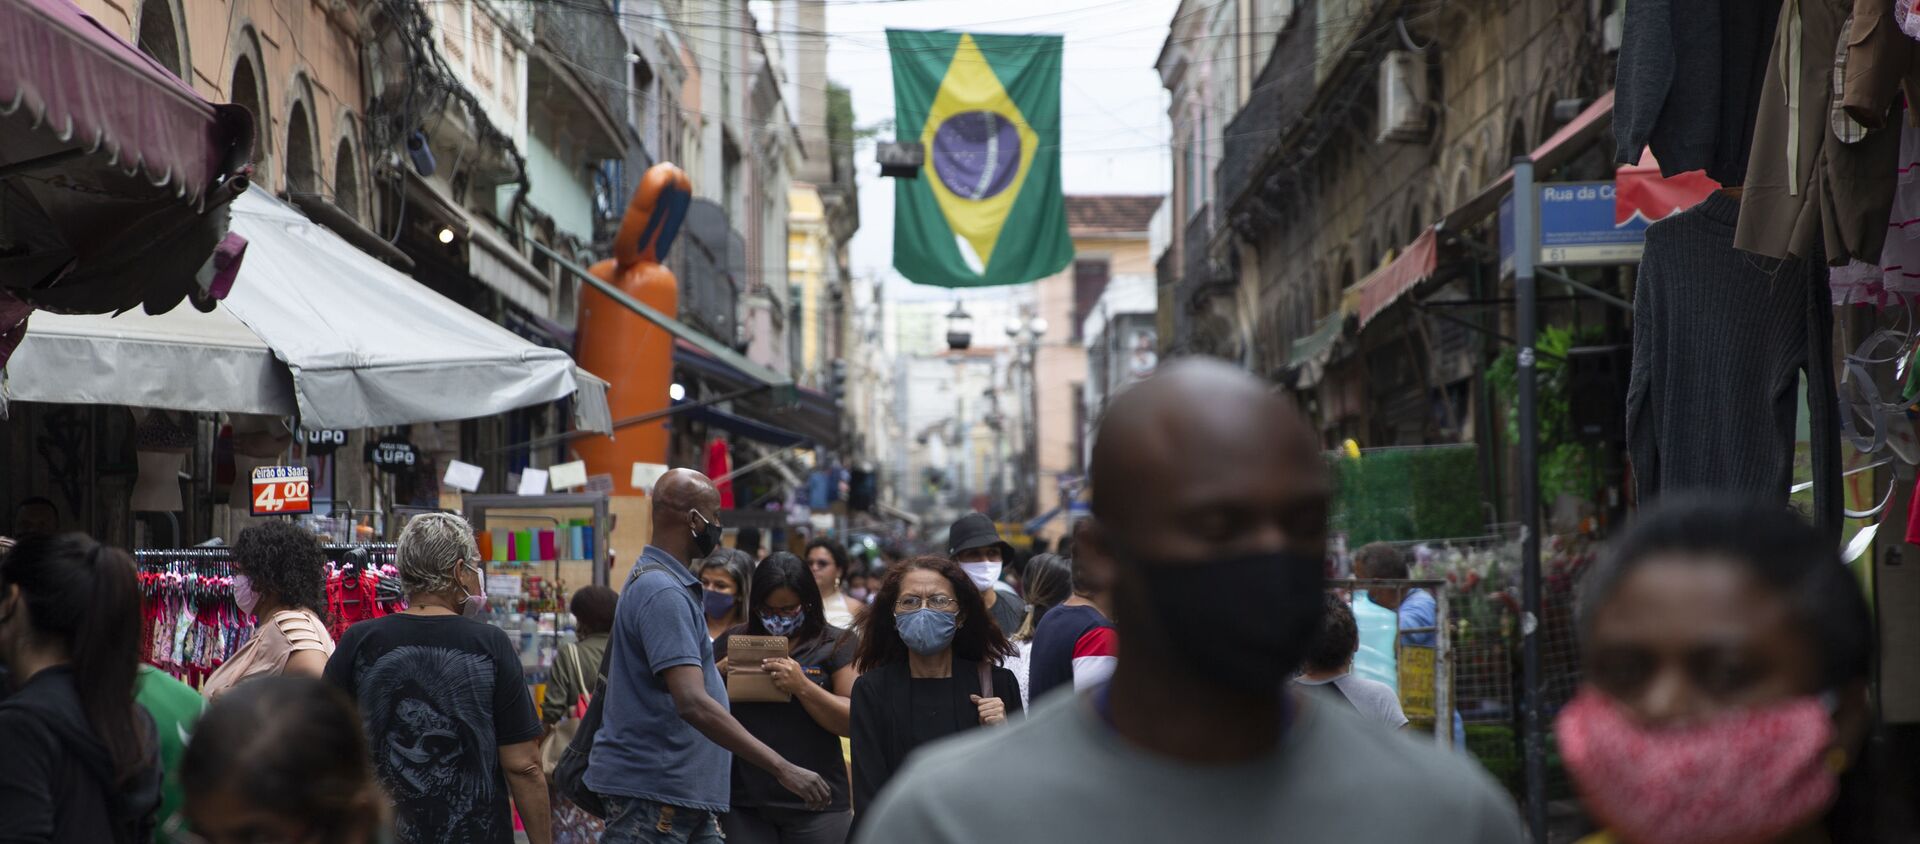 Movimentação nas ruas e comércio nos arredores do Mercado Popular do Saara, no centro do Rio de Janeiro, durante a pandemia da COVID-19, em 10 de julho de 2020. - Sputnik Brasil, 1920, 12.08.2020